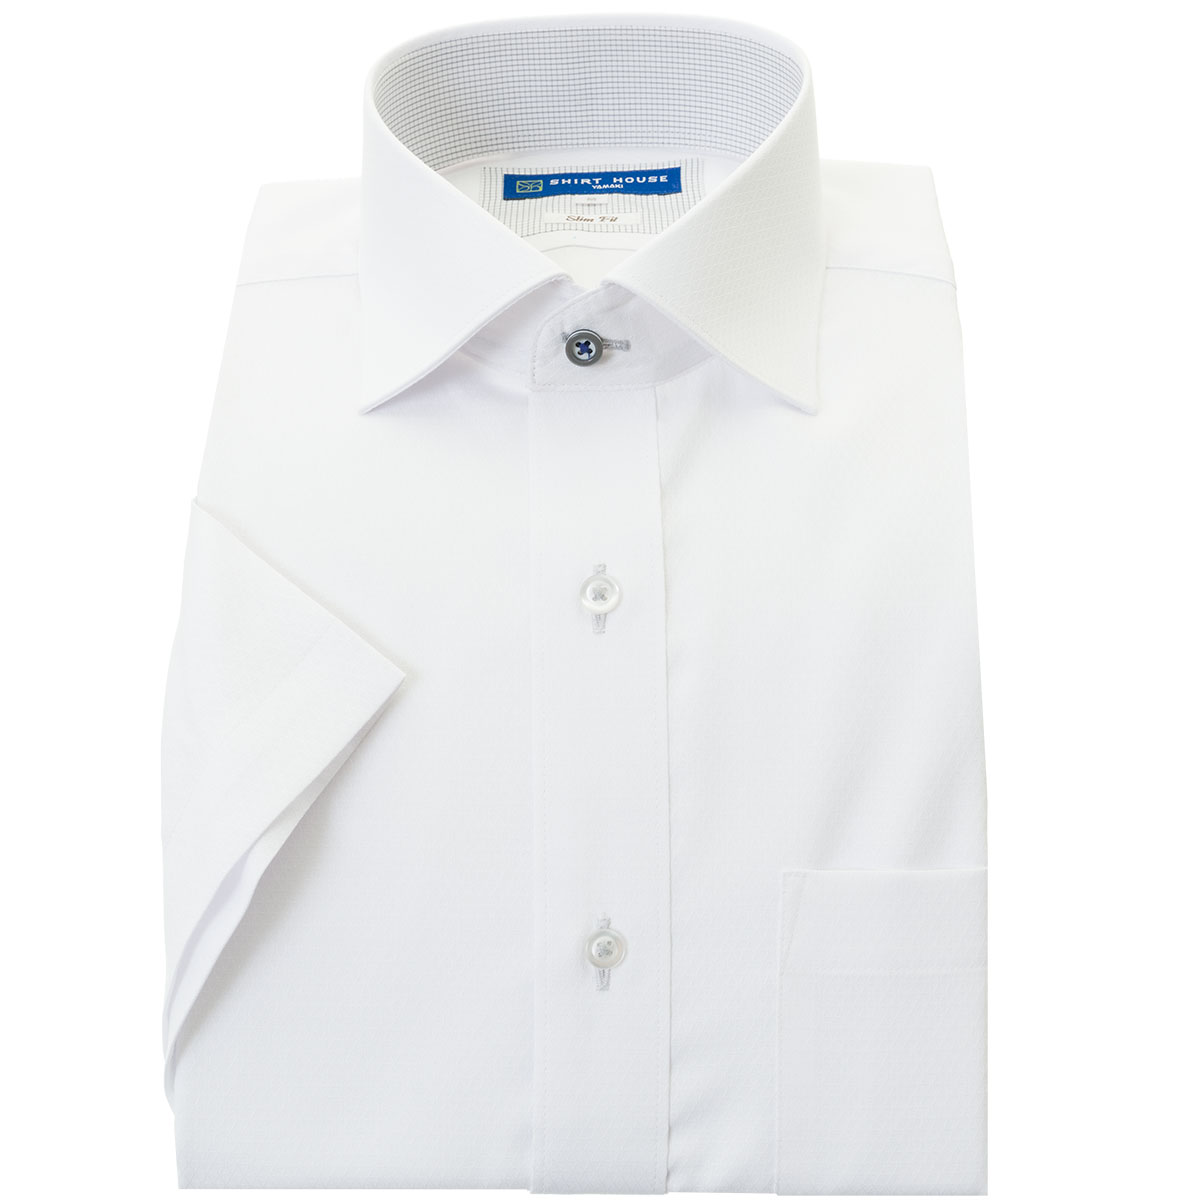 SHIRT HOUSE・ブルーレーベル 半袖スリムフィット ワイドカラー ホワイト ワイシャツ